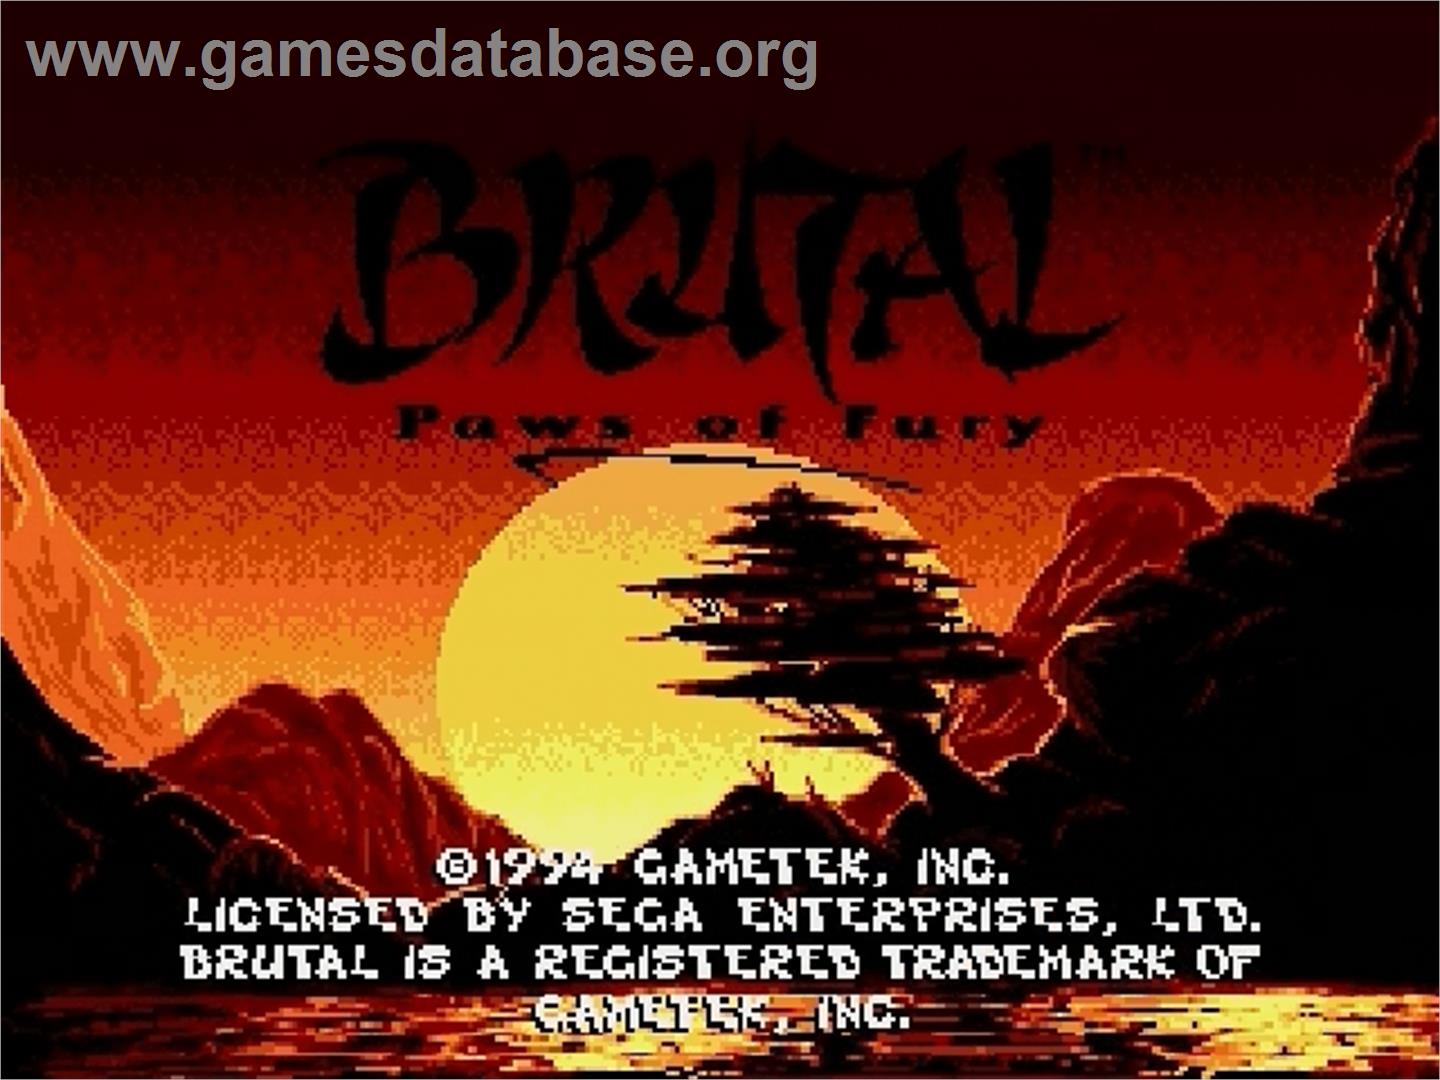 Brutal: Paws of Fury - Sega Genesis - Artwork - Title Screen